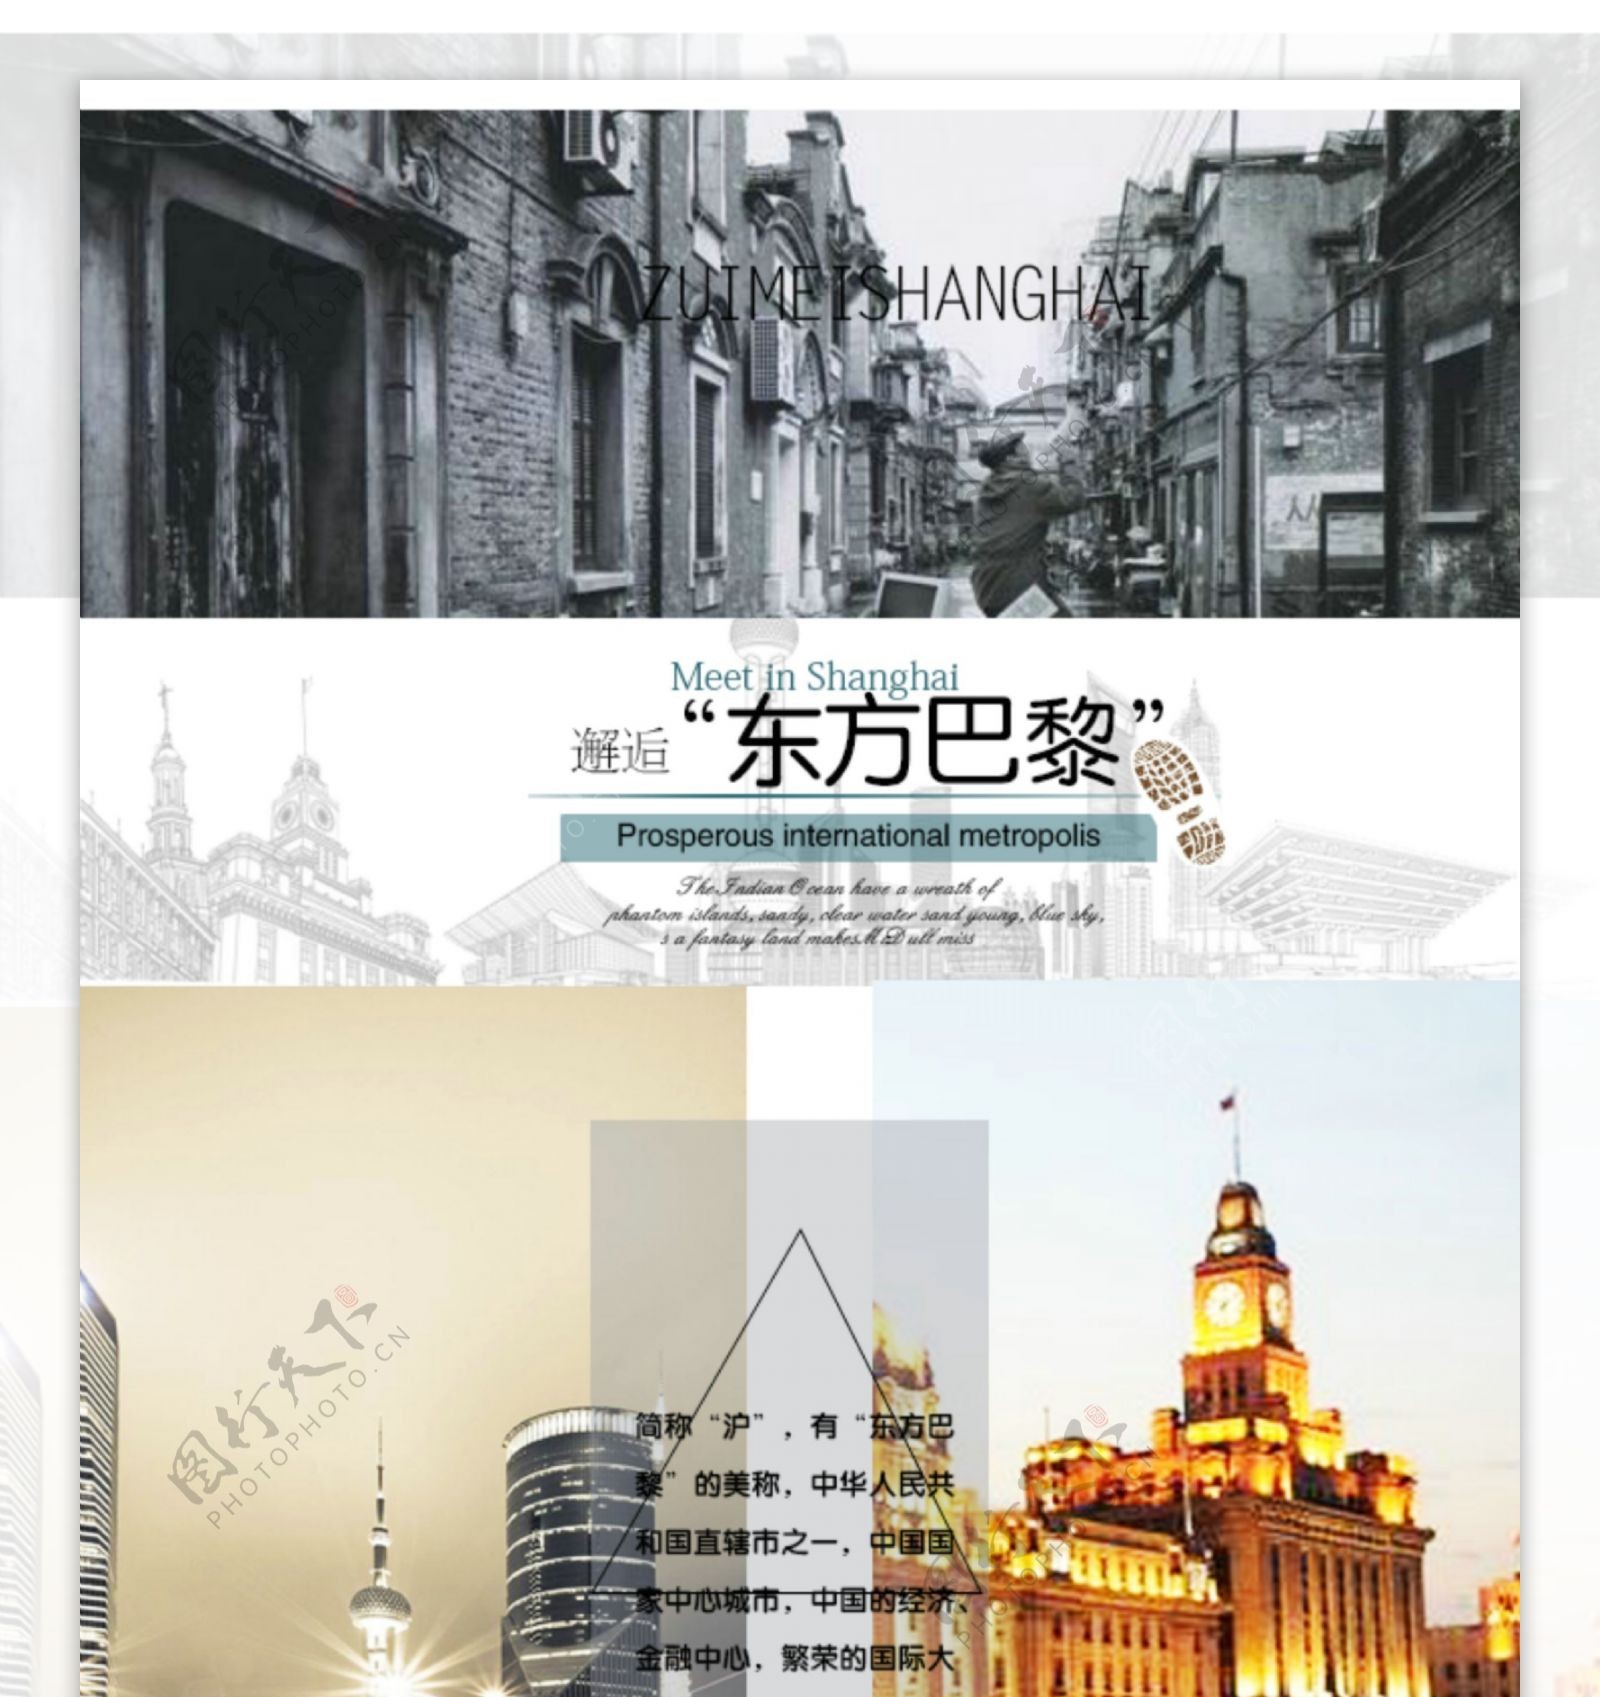 依据上海资料图片排版